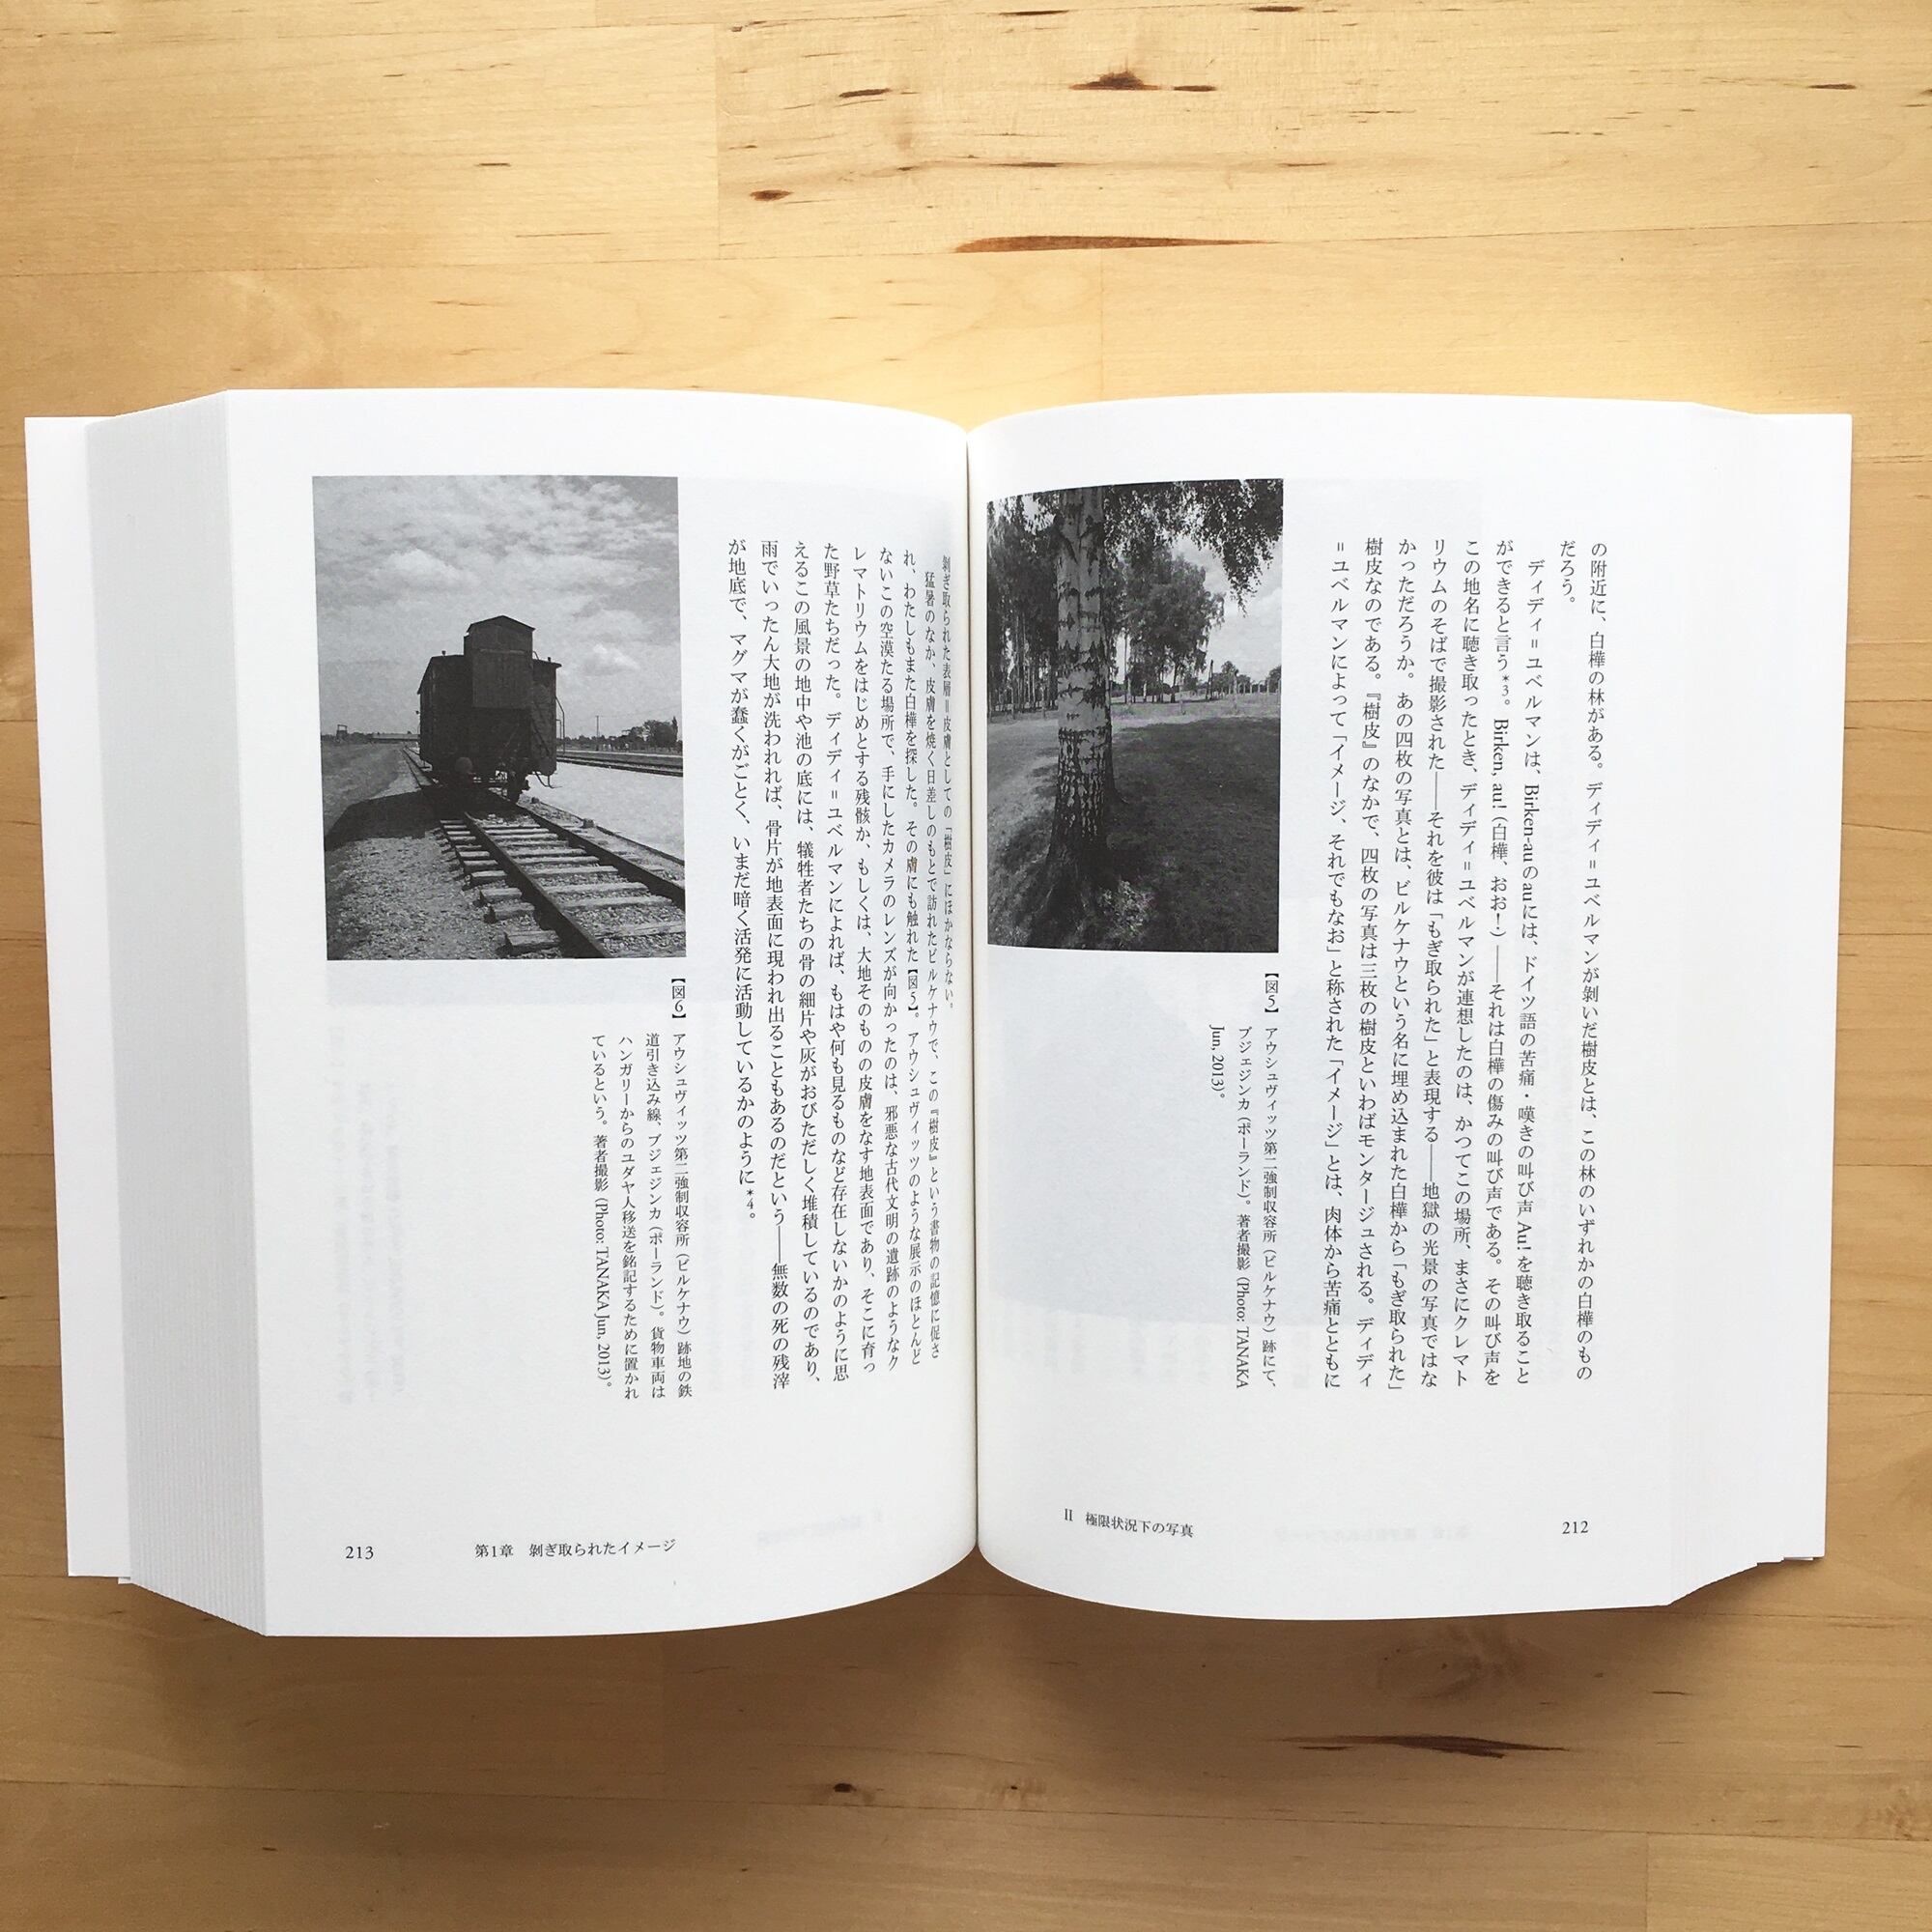 田中純『過去に触れる──歴史経験・写真・サスペンス』